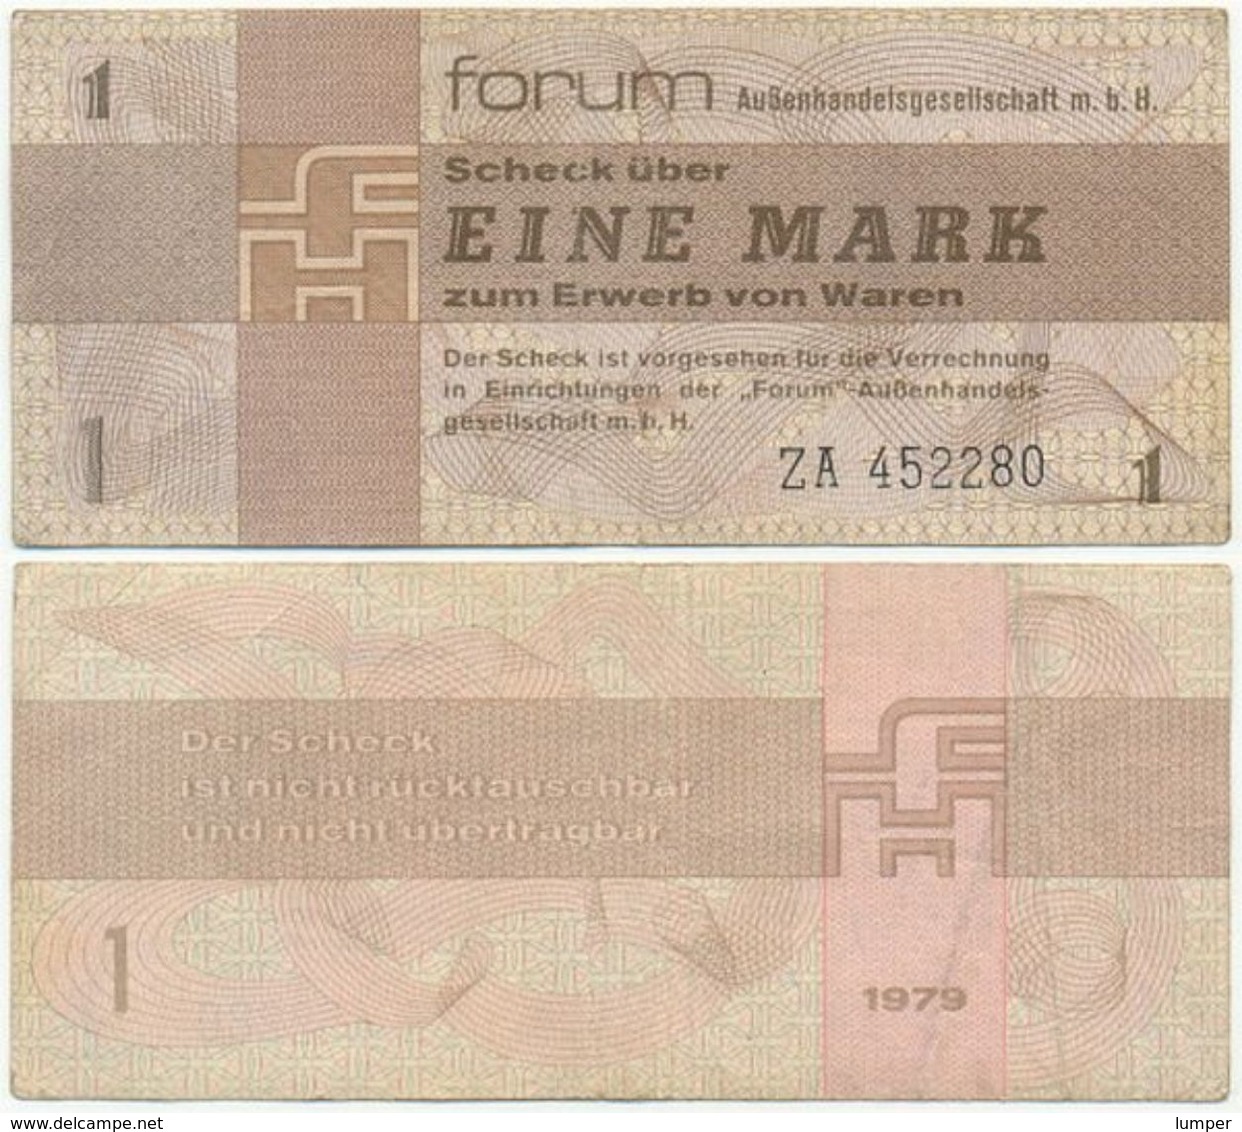 DDR 1979, 1 Mark, Forumscheck, Ersatznote ZA, Aussenhandelsgesellschaft, Geldschein, Banknote - [14] Forum-Aussenhandelsgesellschaft MBH